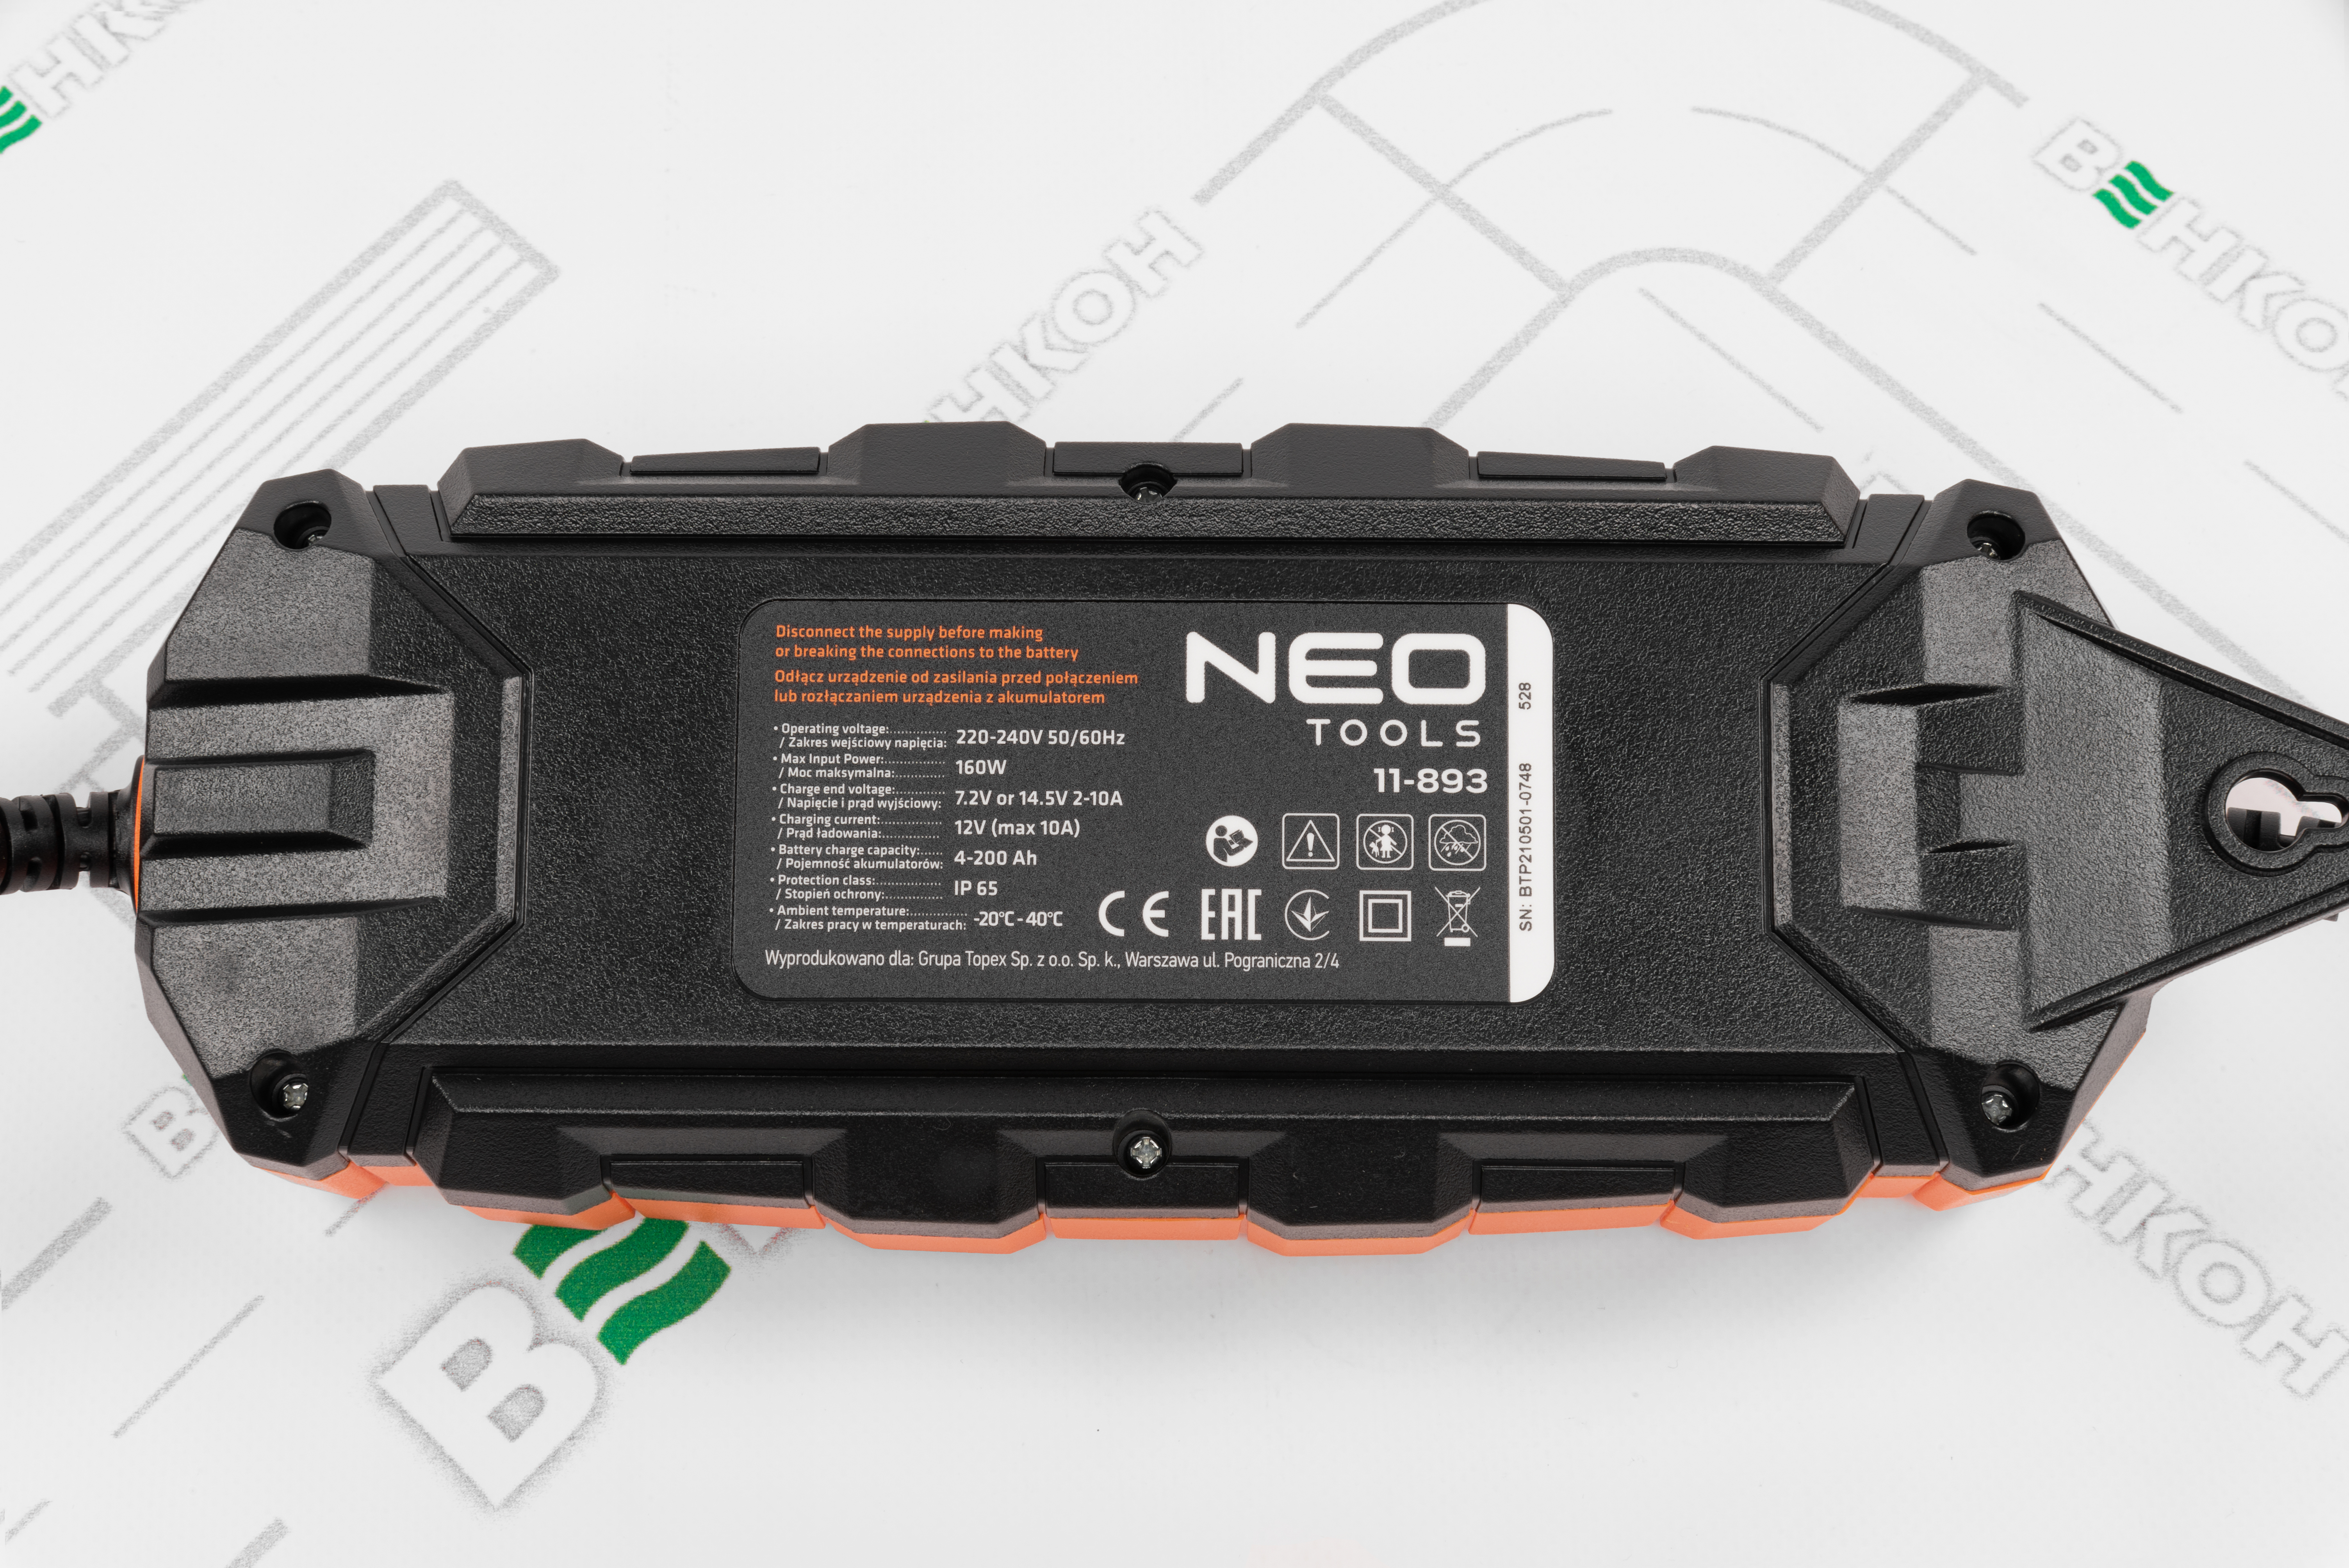 продаємо Neo Tools 11-893 в Україні - фото 4